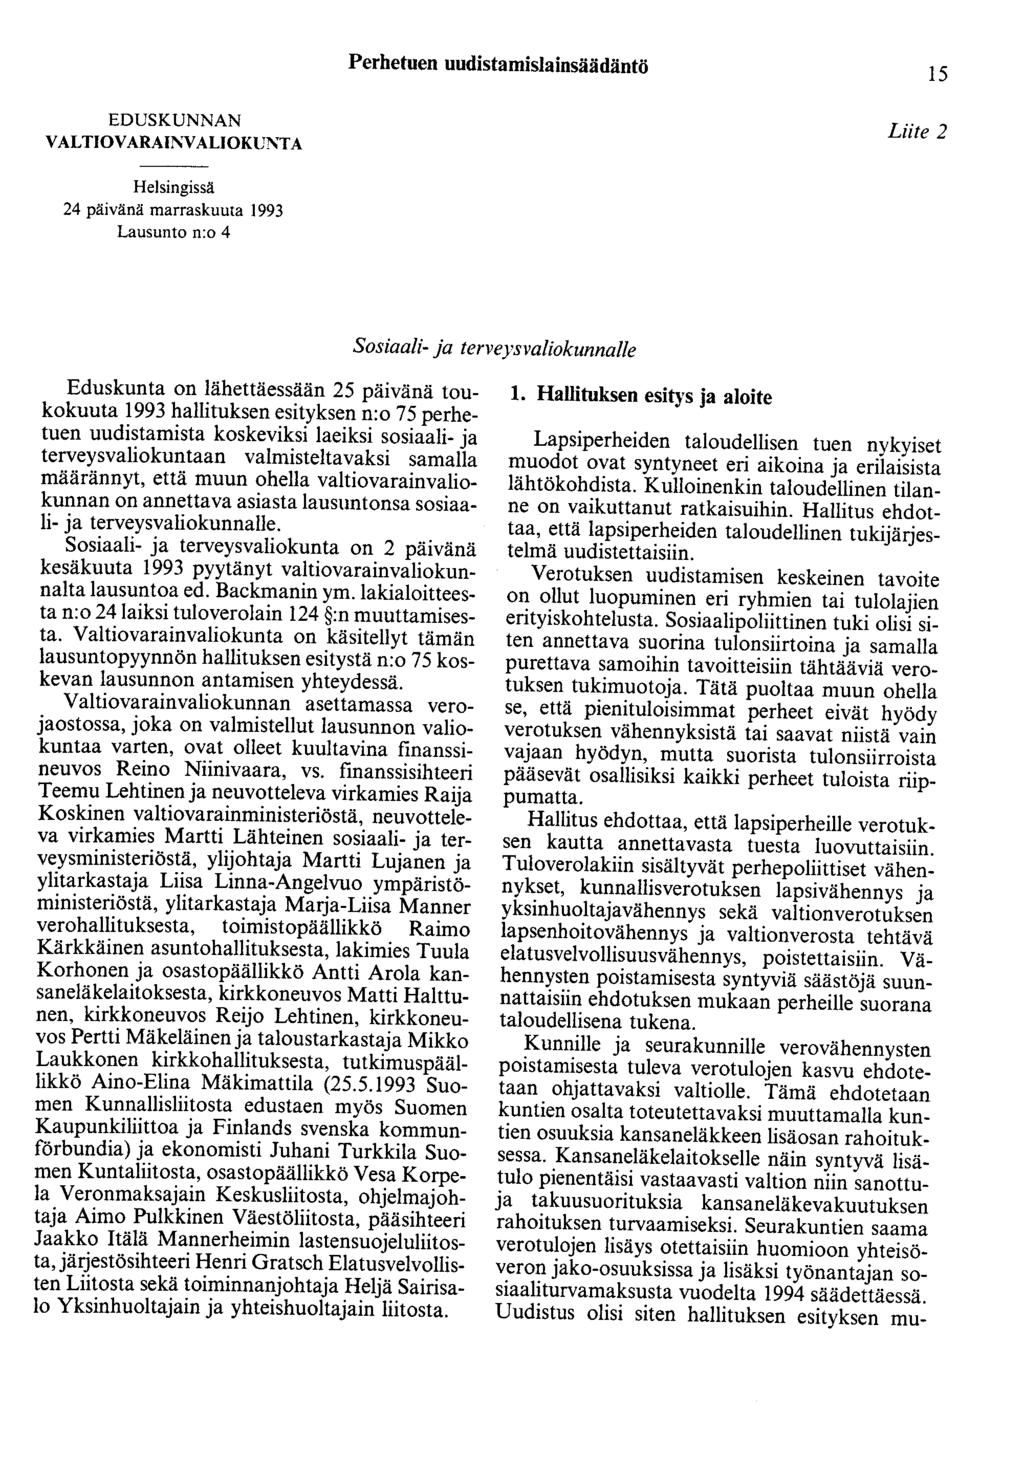 Perhetuen uudistamislainsäädäntö 15 EDUSKUNNAN VALTIOVARAINVALIOKUl\'TA Liite 2 Helsingissä 24 päivänä marraskuuta 1993 Lausunto n:o 4 Sosiaali- ja terveysvaliokunnalle Eduskunta on lähettäessään 25